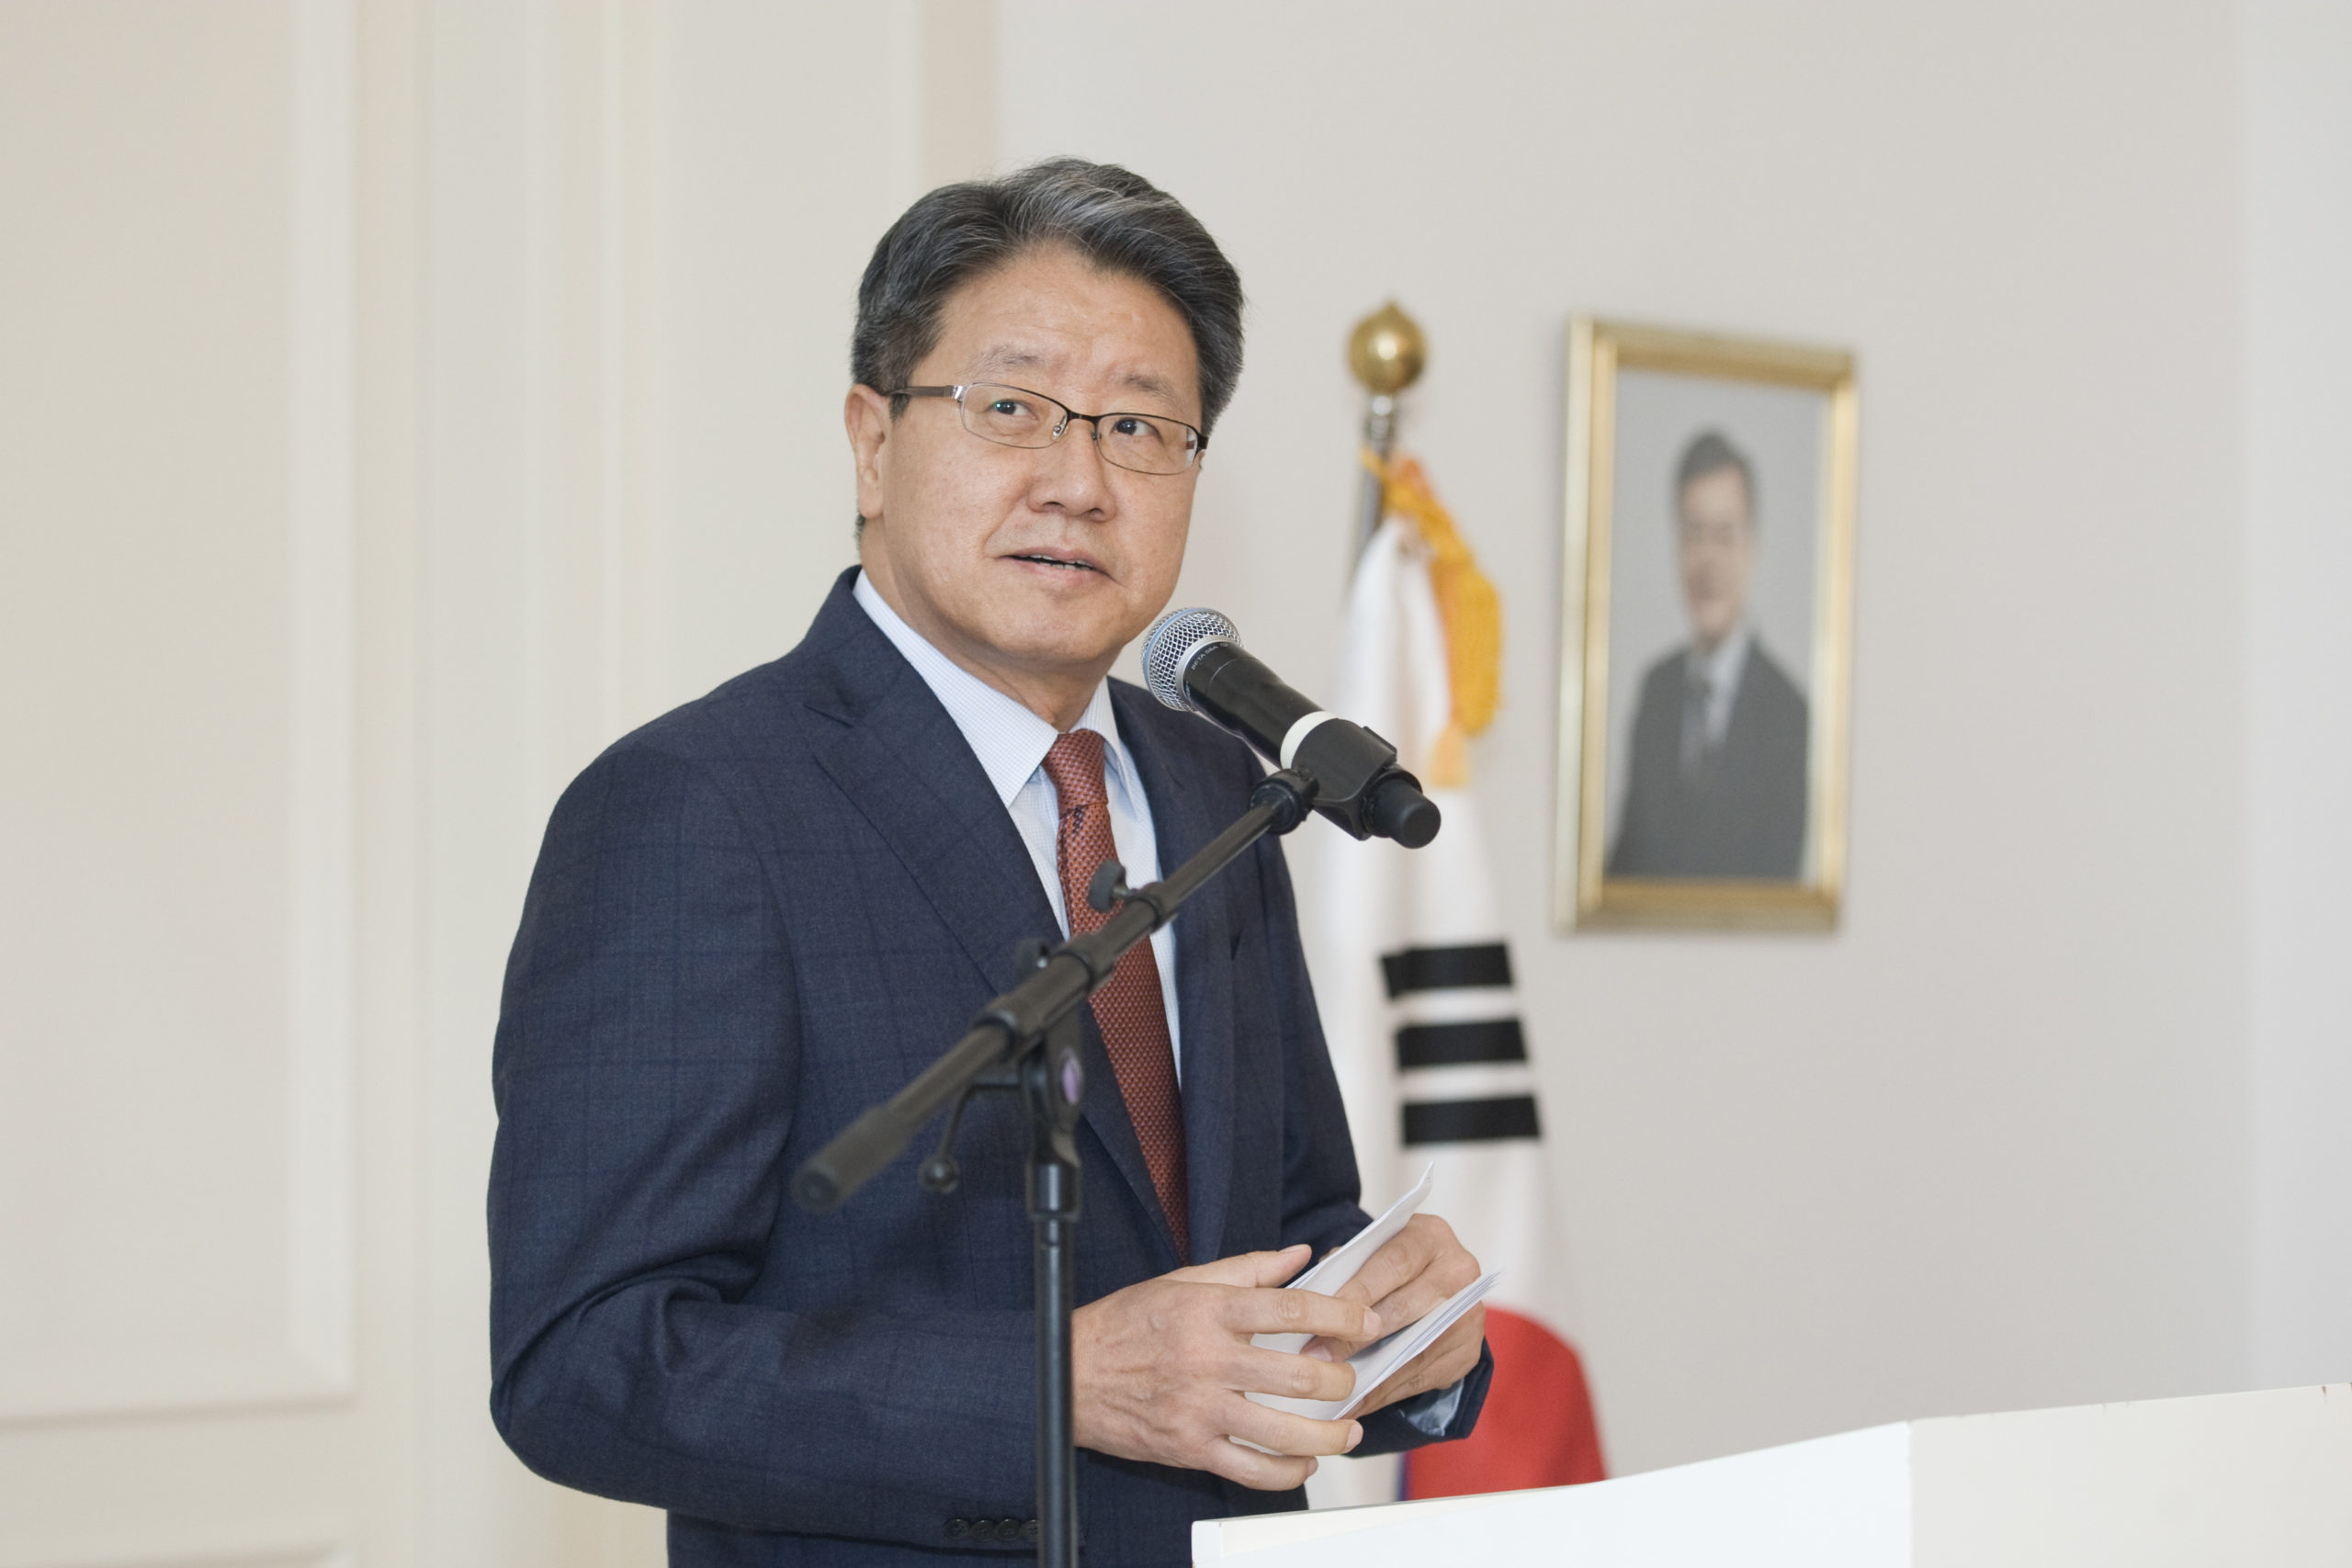 Mr. Yim Geun Hyeong is selected as CityNet new CEO